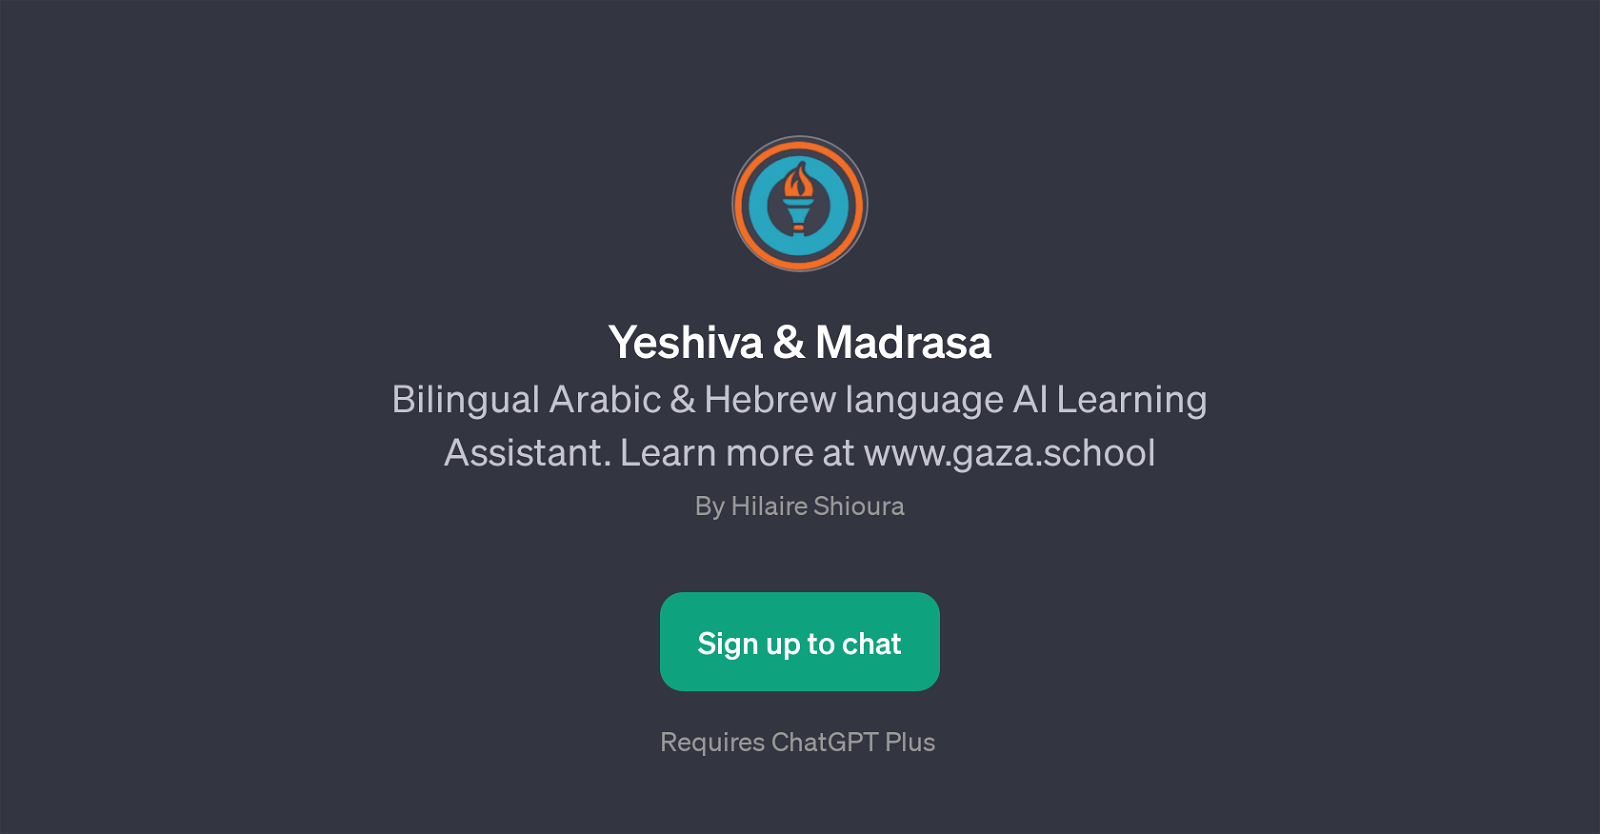 Yeshiva & Madrasa website